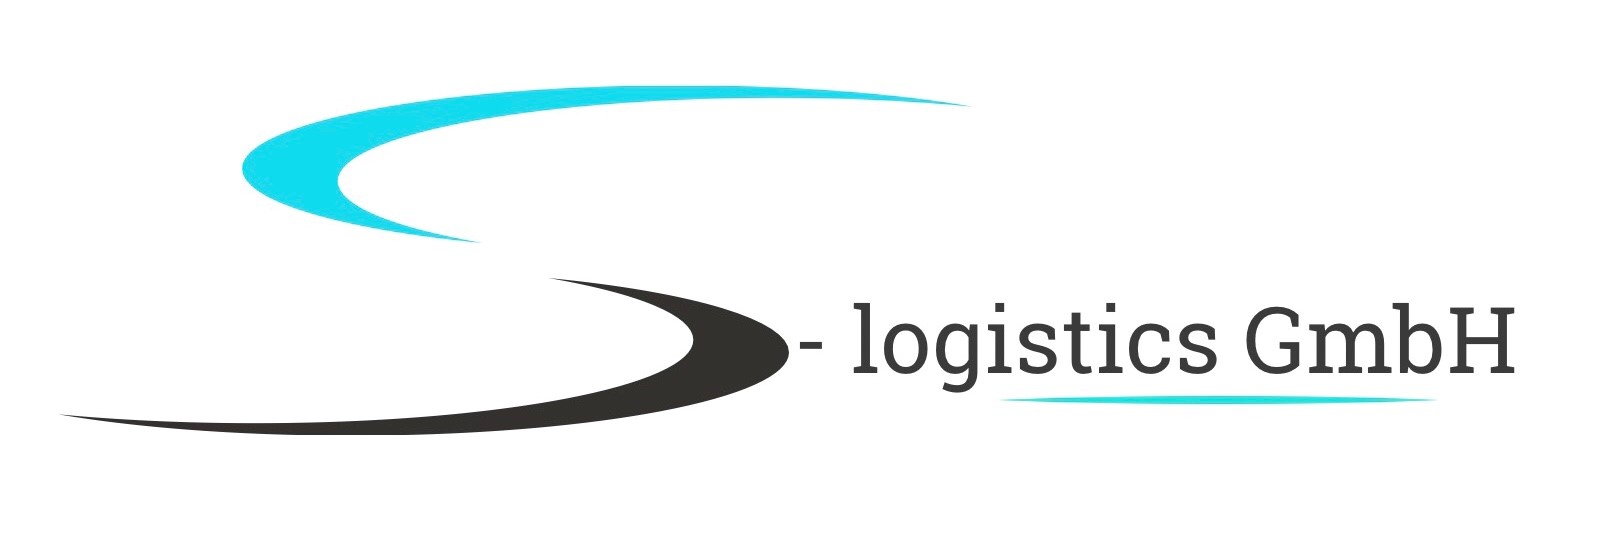 S-logistics GmbH